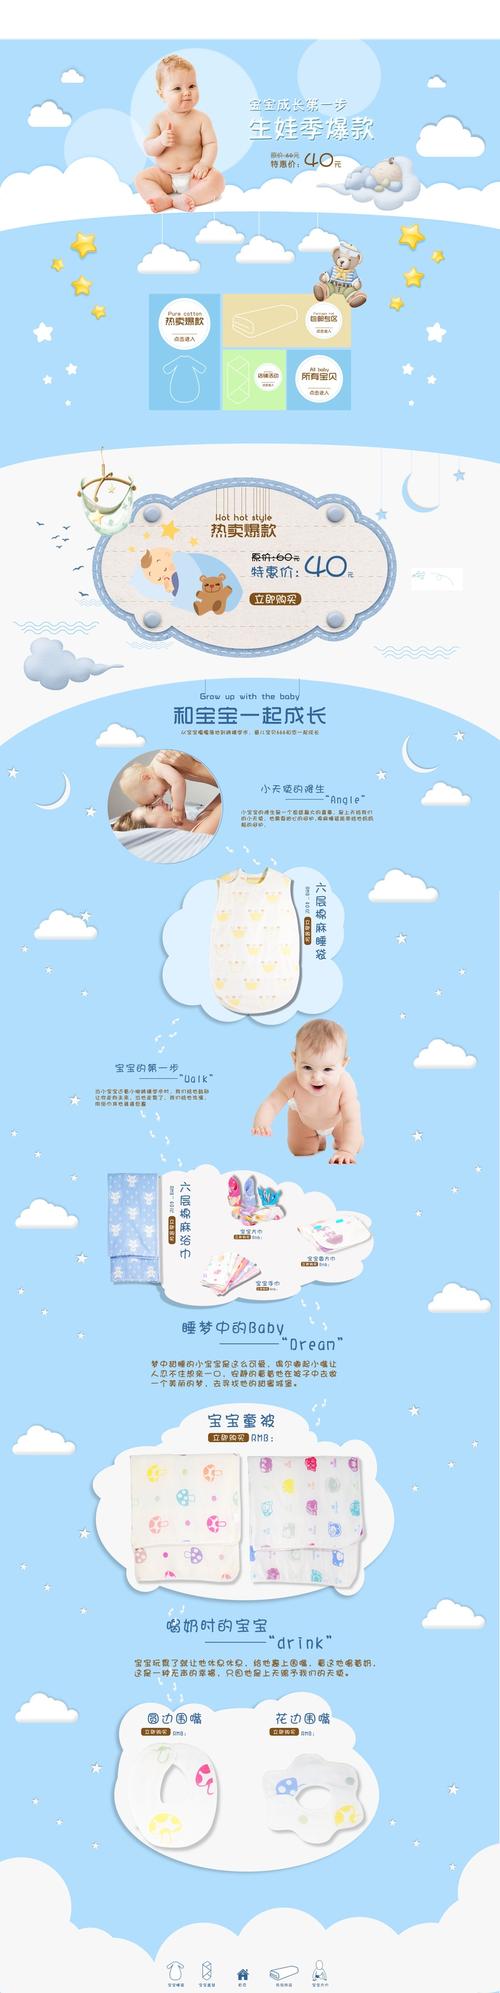 清新简约母婴婴儿用品店铺首页活动页面设计模板素材